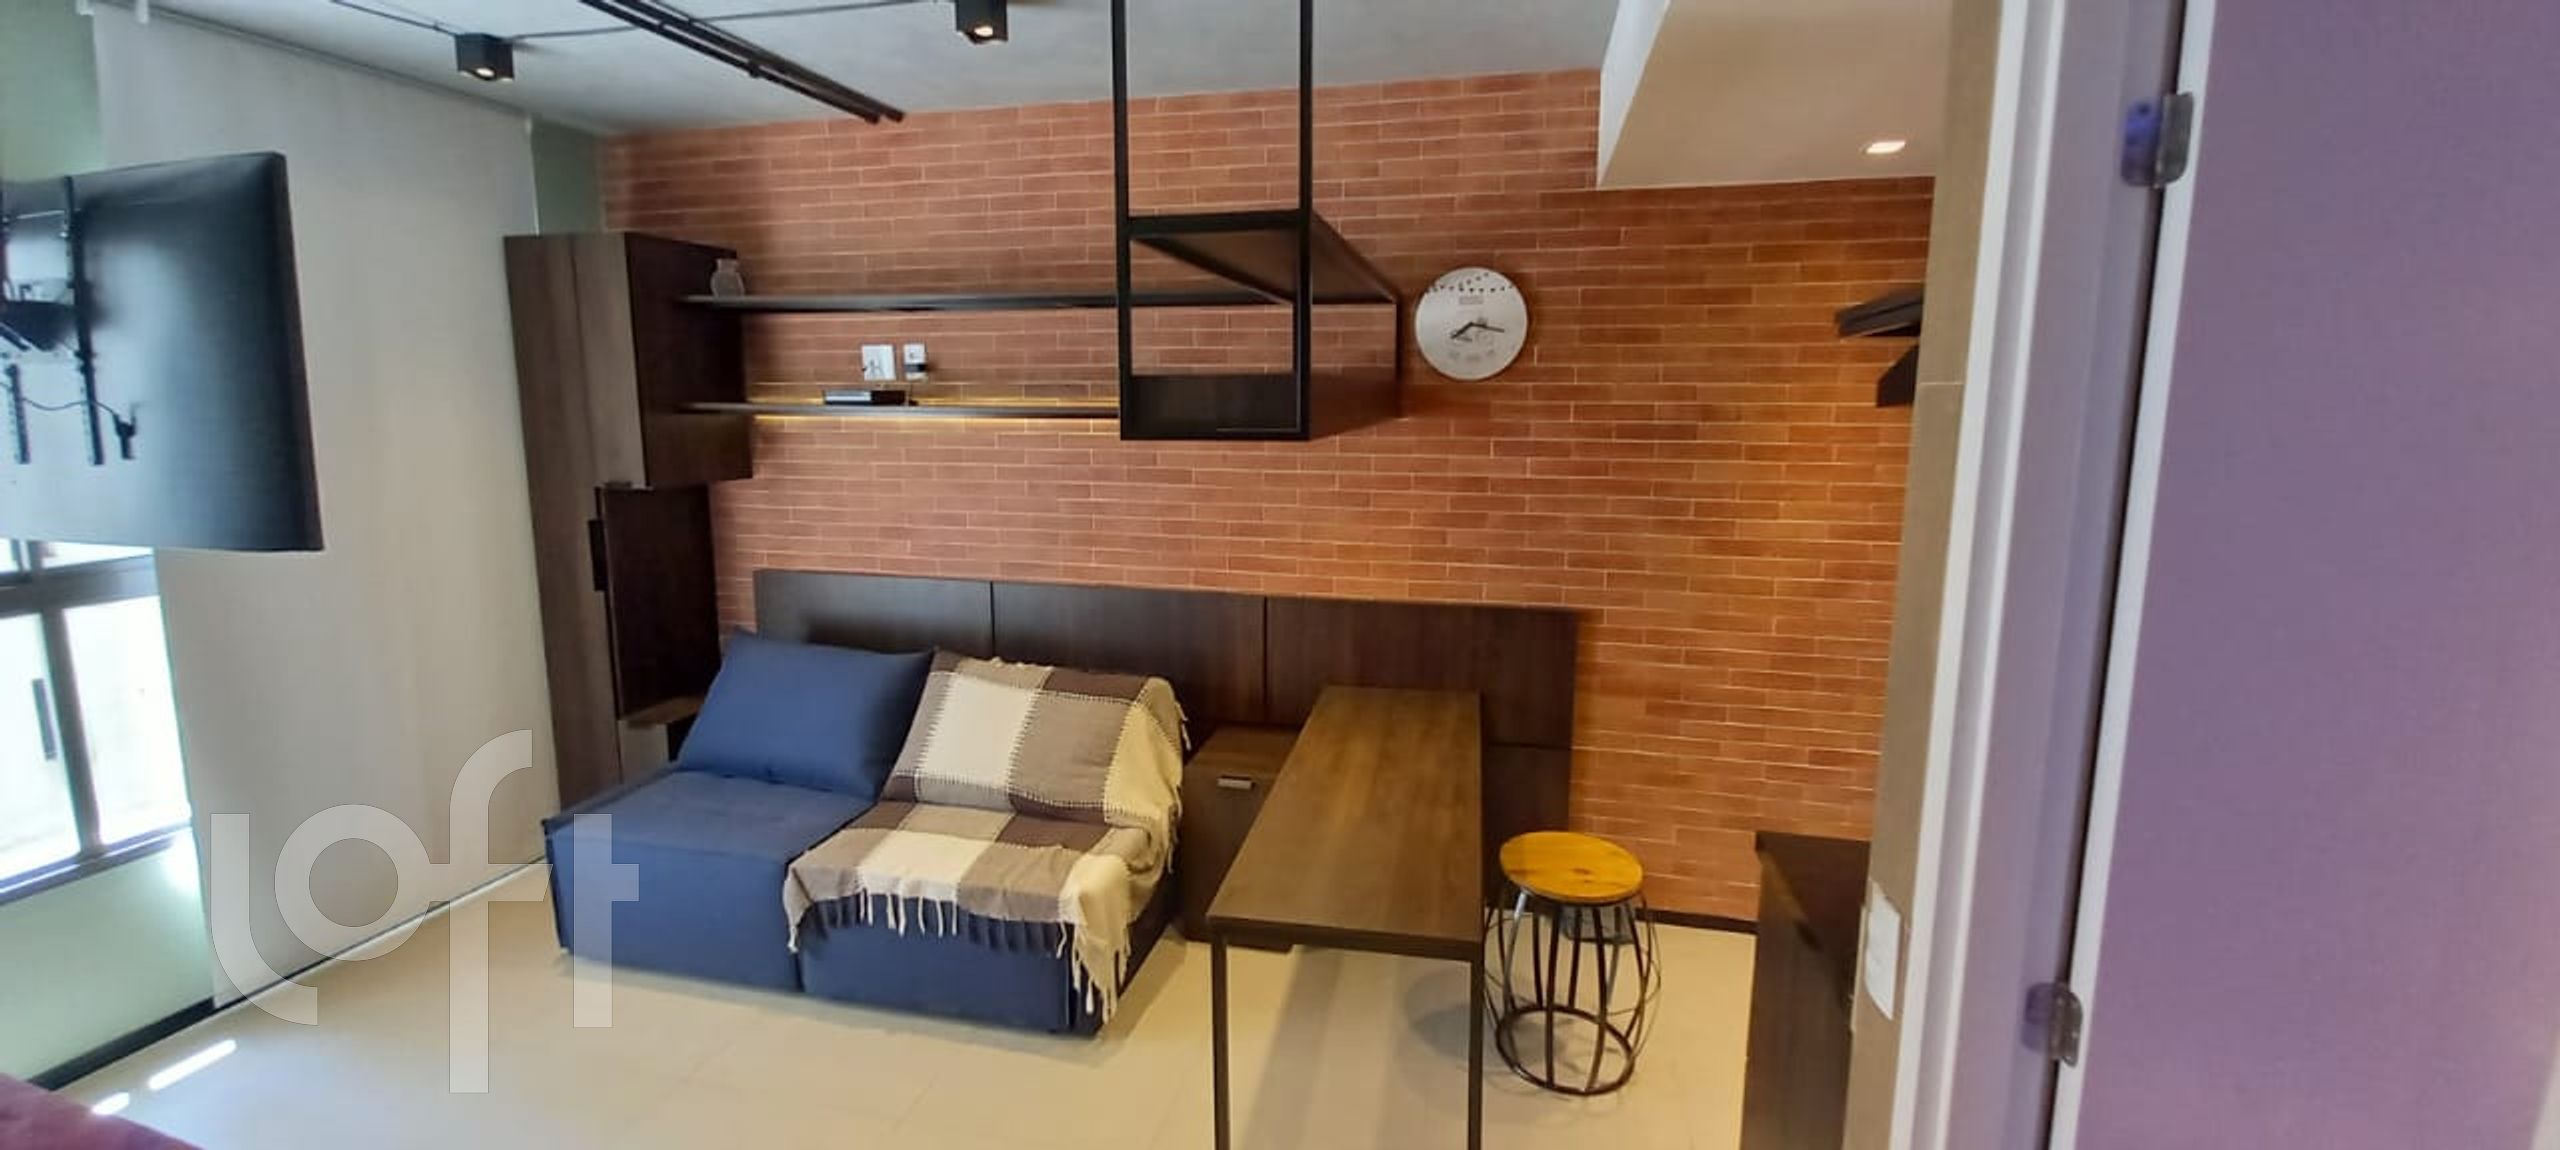 Apartamento em Consolação, São Paulo/SP de 0m² 1 quartos à venda por R$ 419.000,00